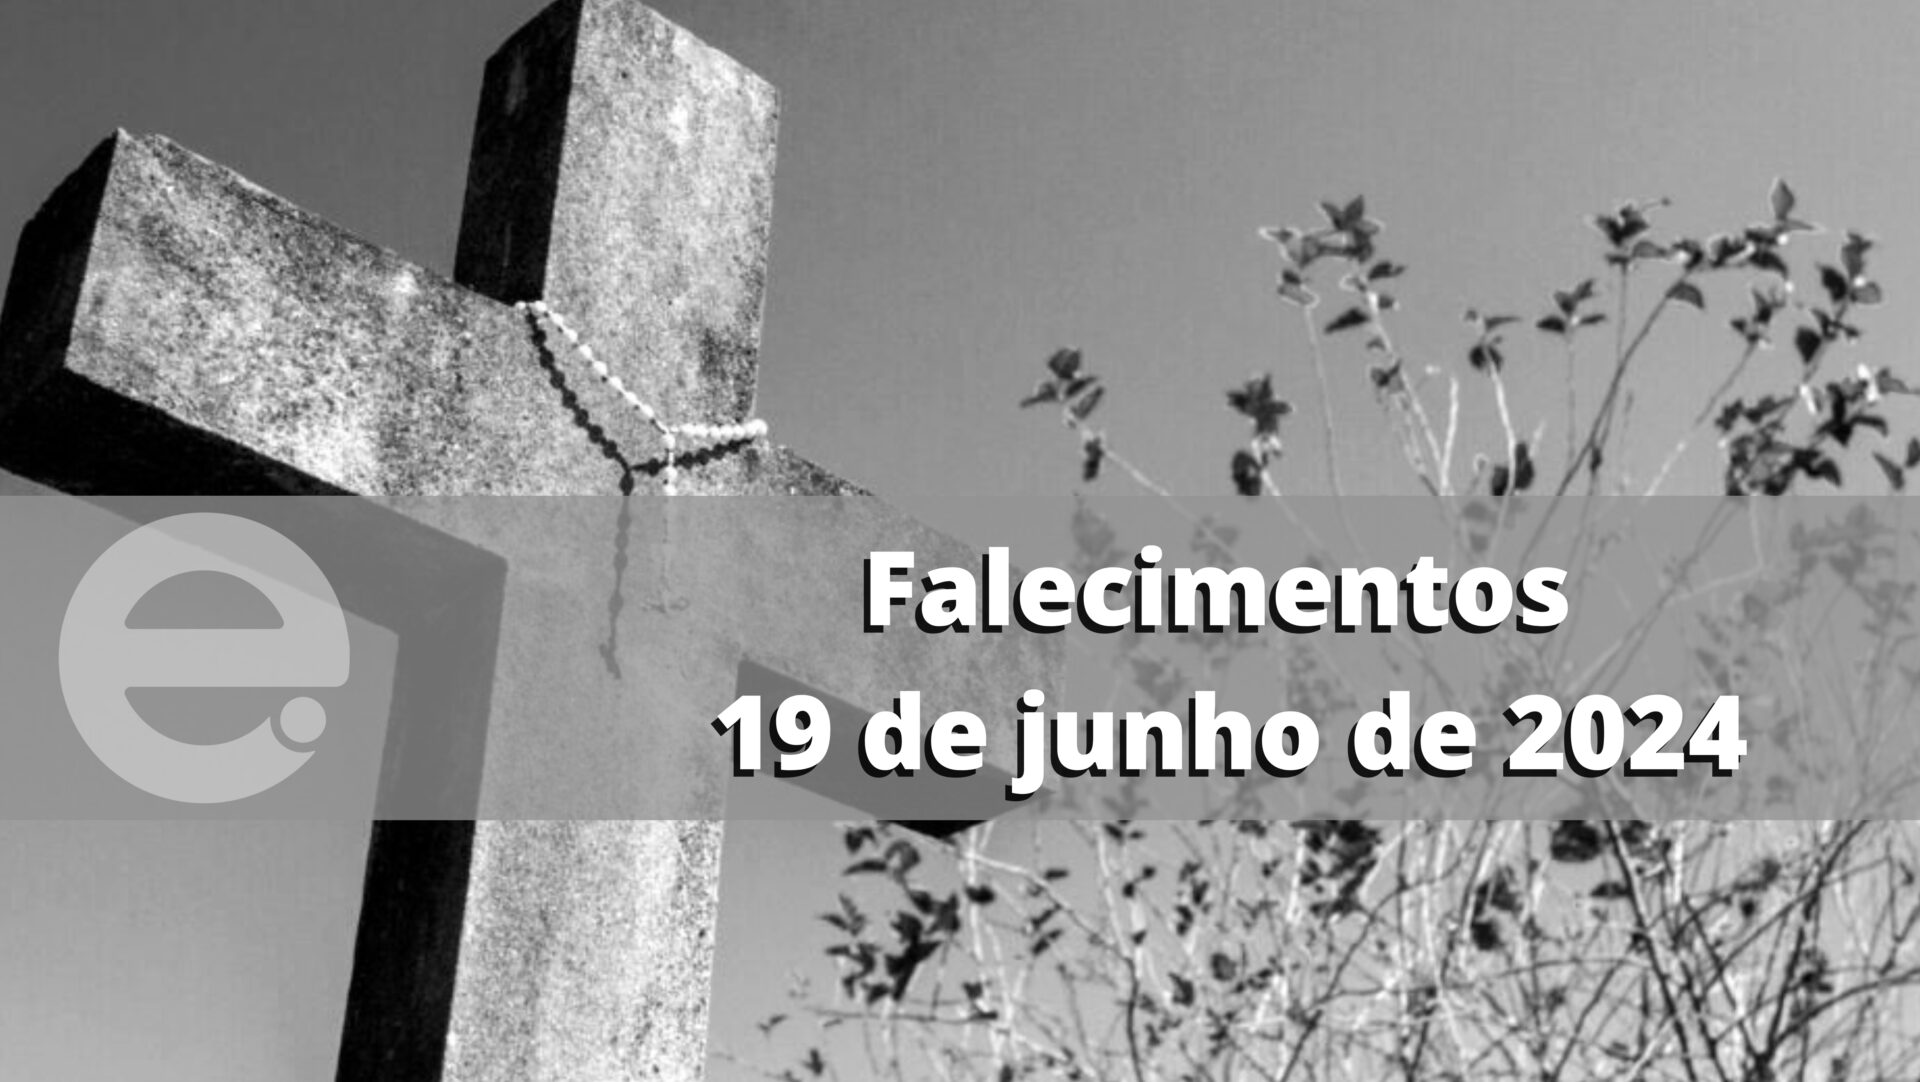 Confira os falecimentos desta quarta-feira, 19 de junho de 2024, em Limeira